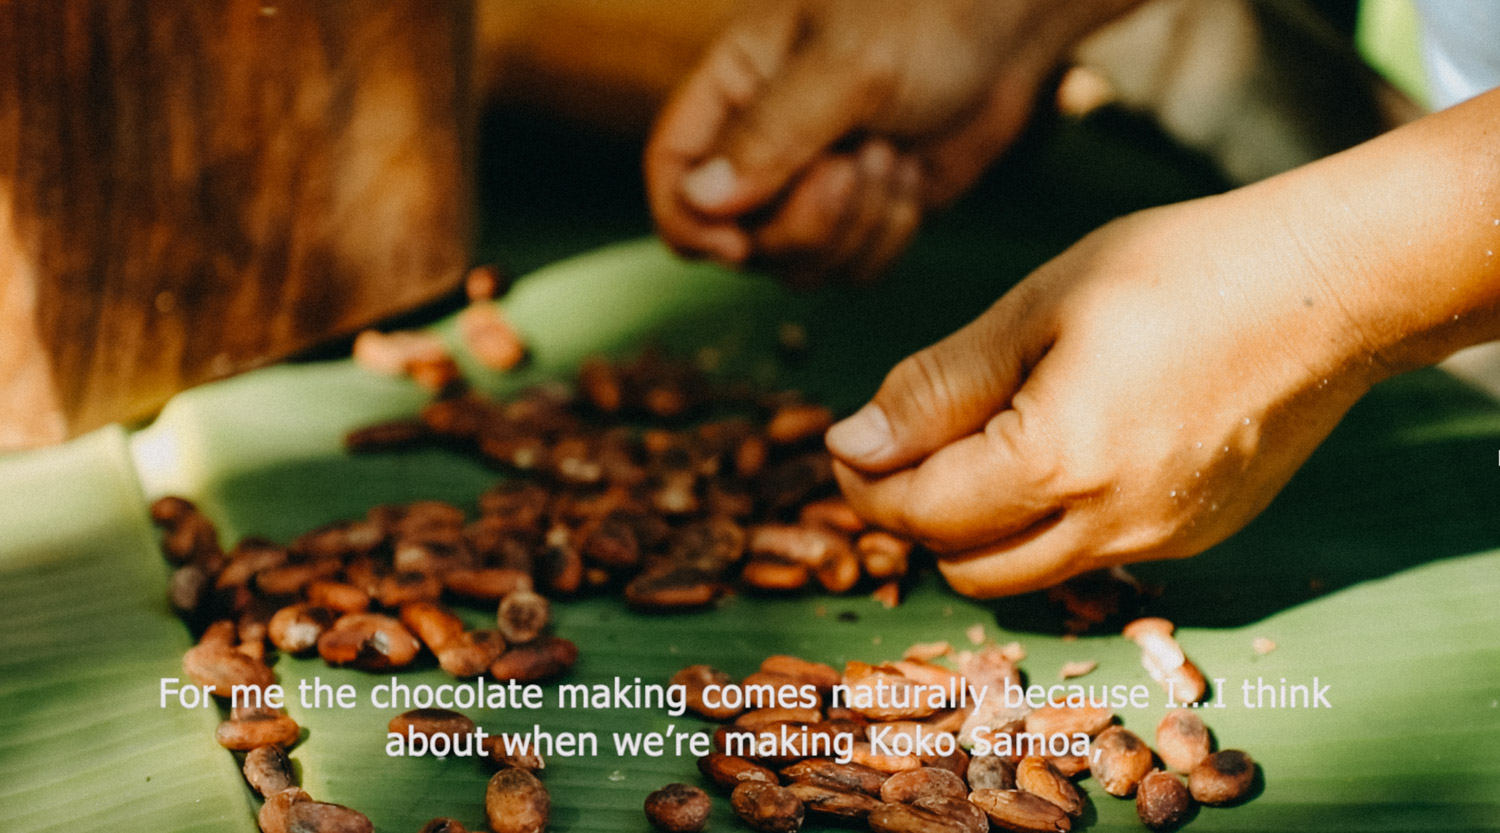 KokoSamoa-Cacao-Samoa-organicfarm-healthyeating-farmer-agriculture-documentary-photography-documentaryfilm-organicfarming-37-2